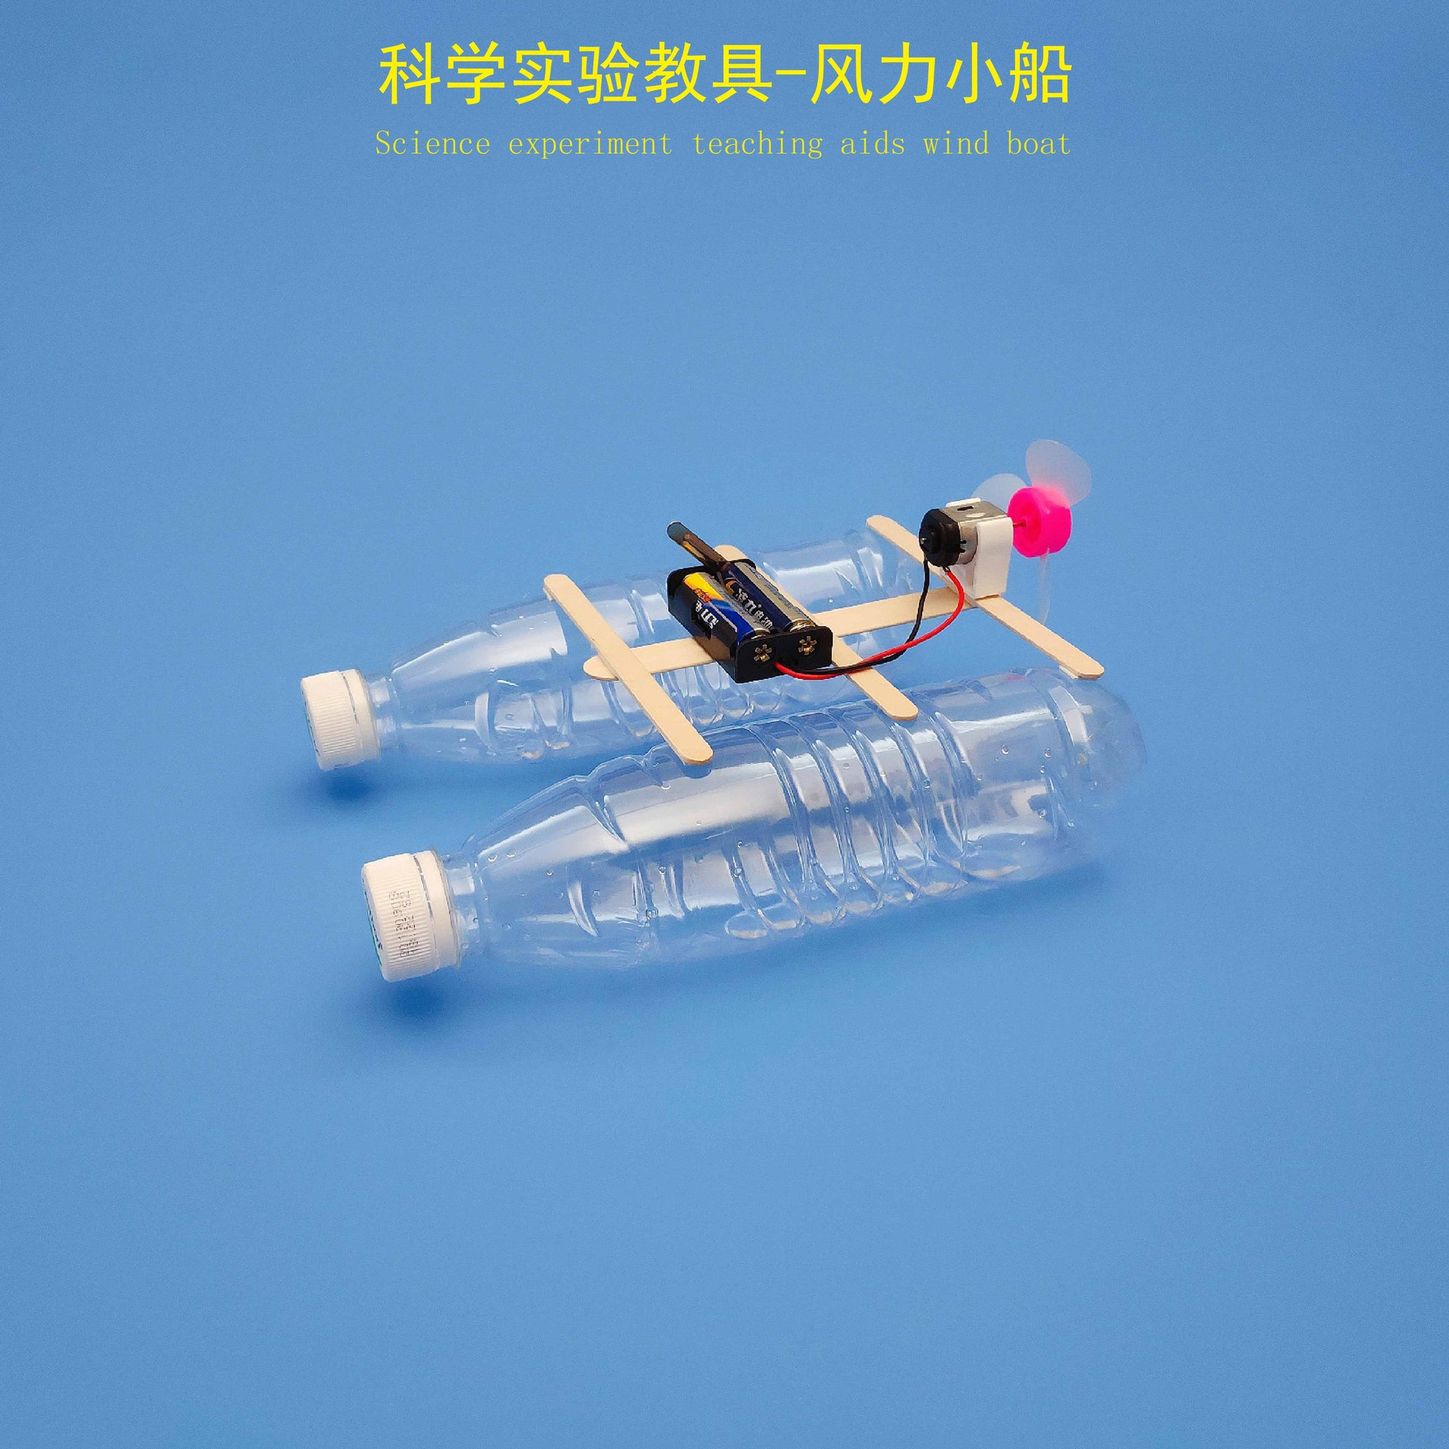 自制风力小船小学生科技手工小制作玩具自制废旧材料电动玩具马达